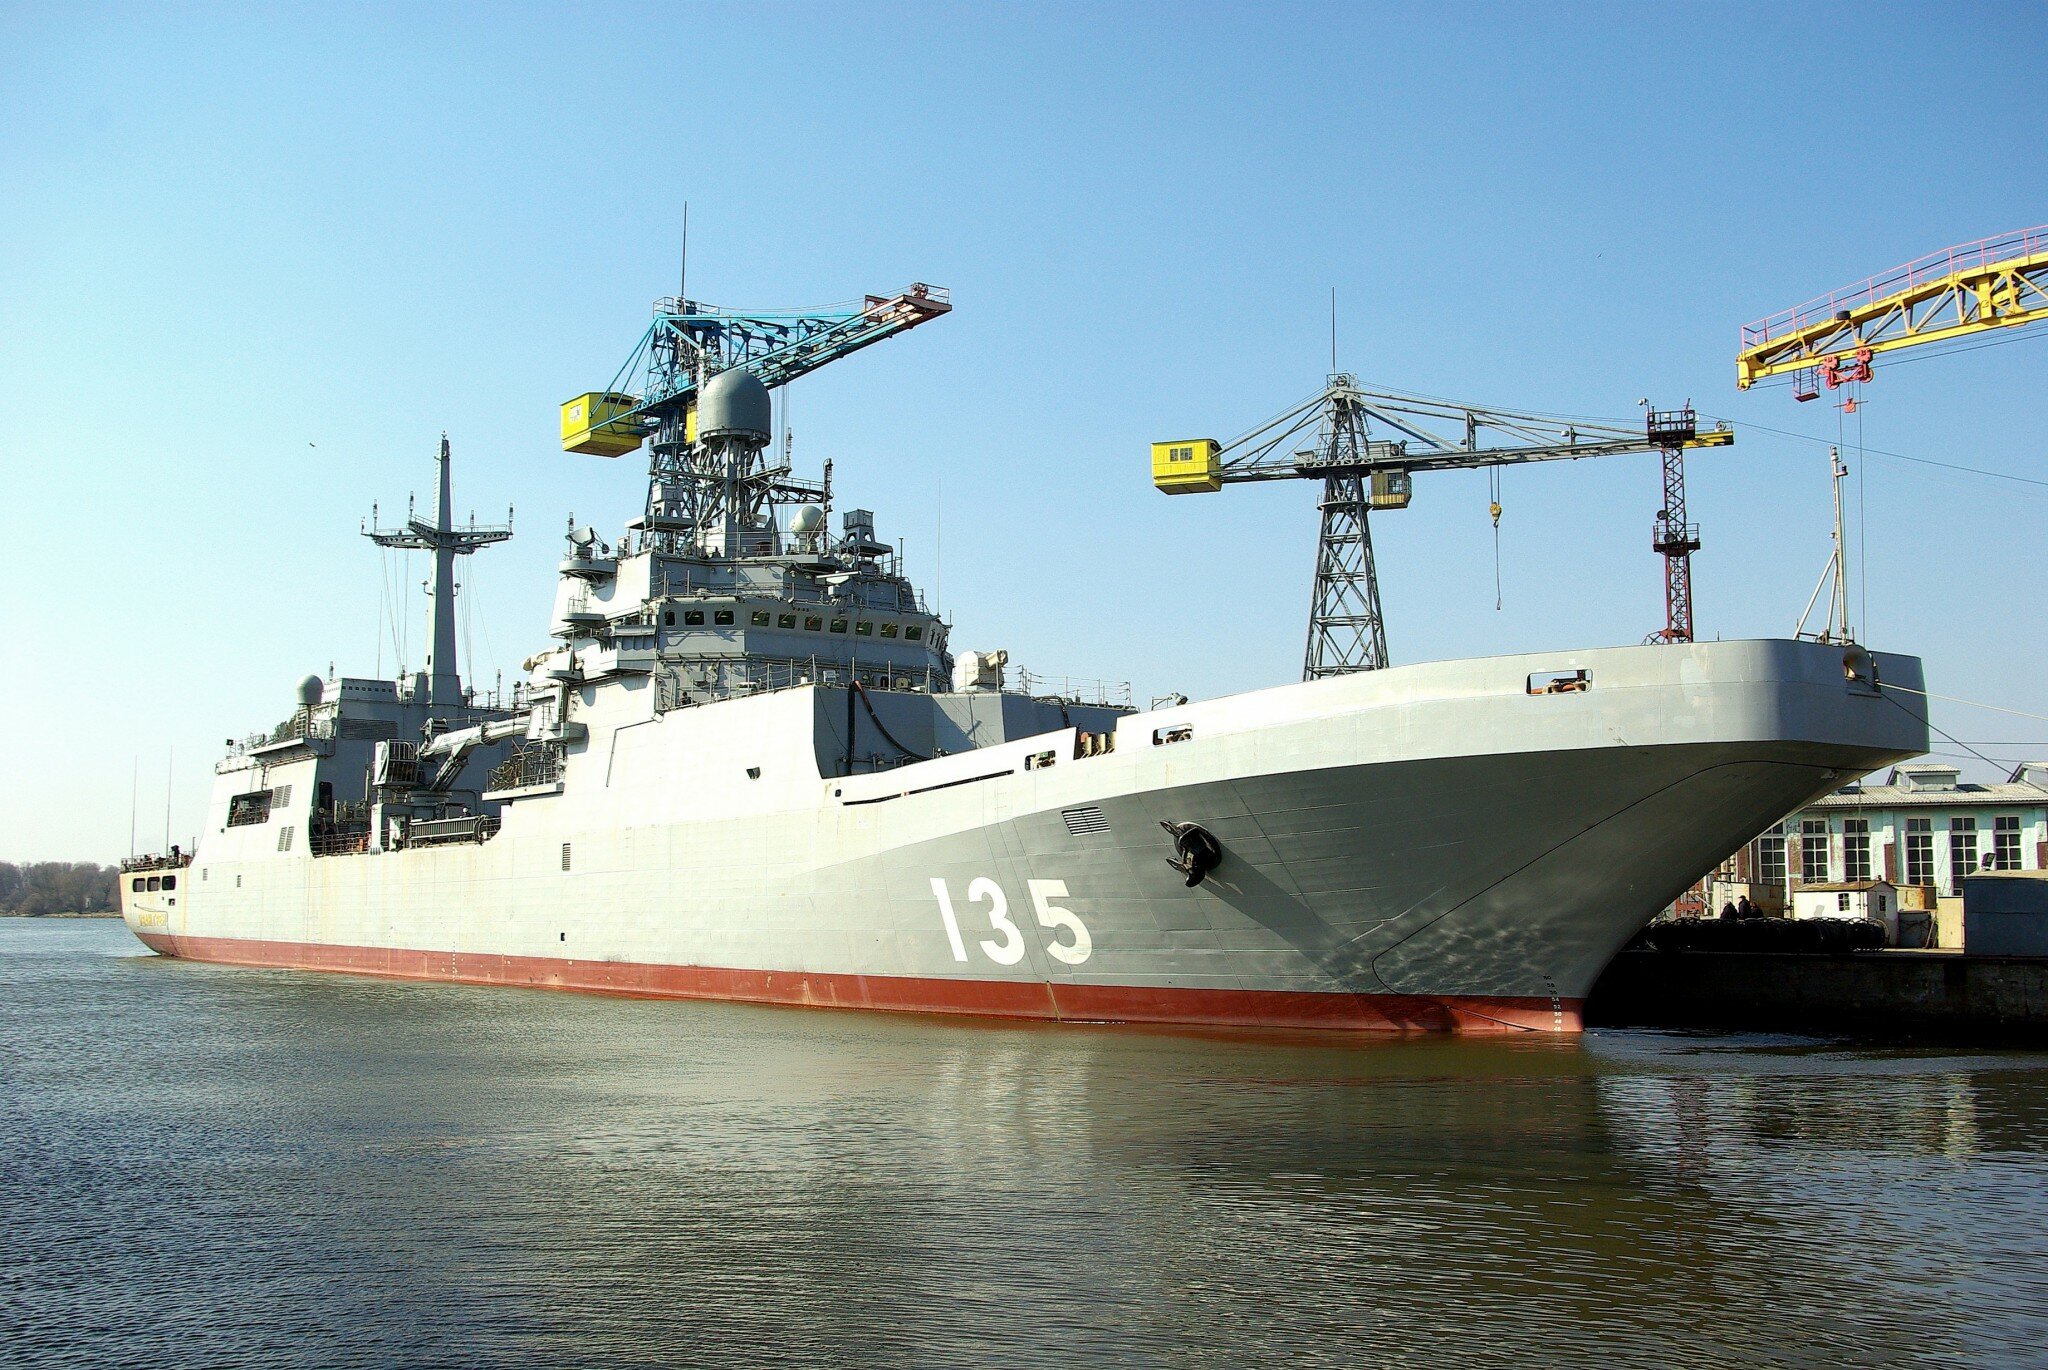  Десантный корабль "Иван Грен" прибыл на боевое дежурство в Калининградскую область 